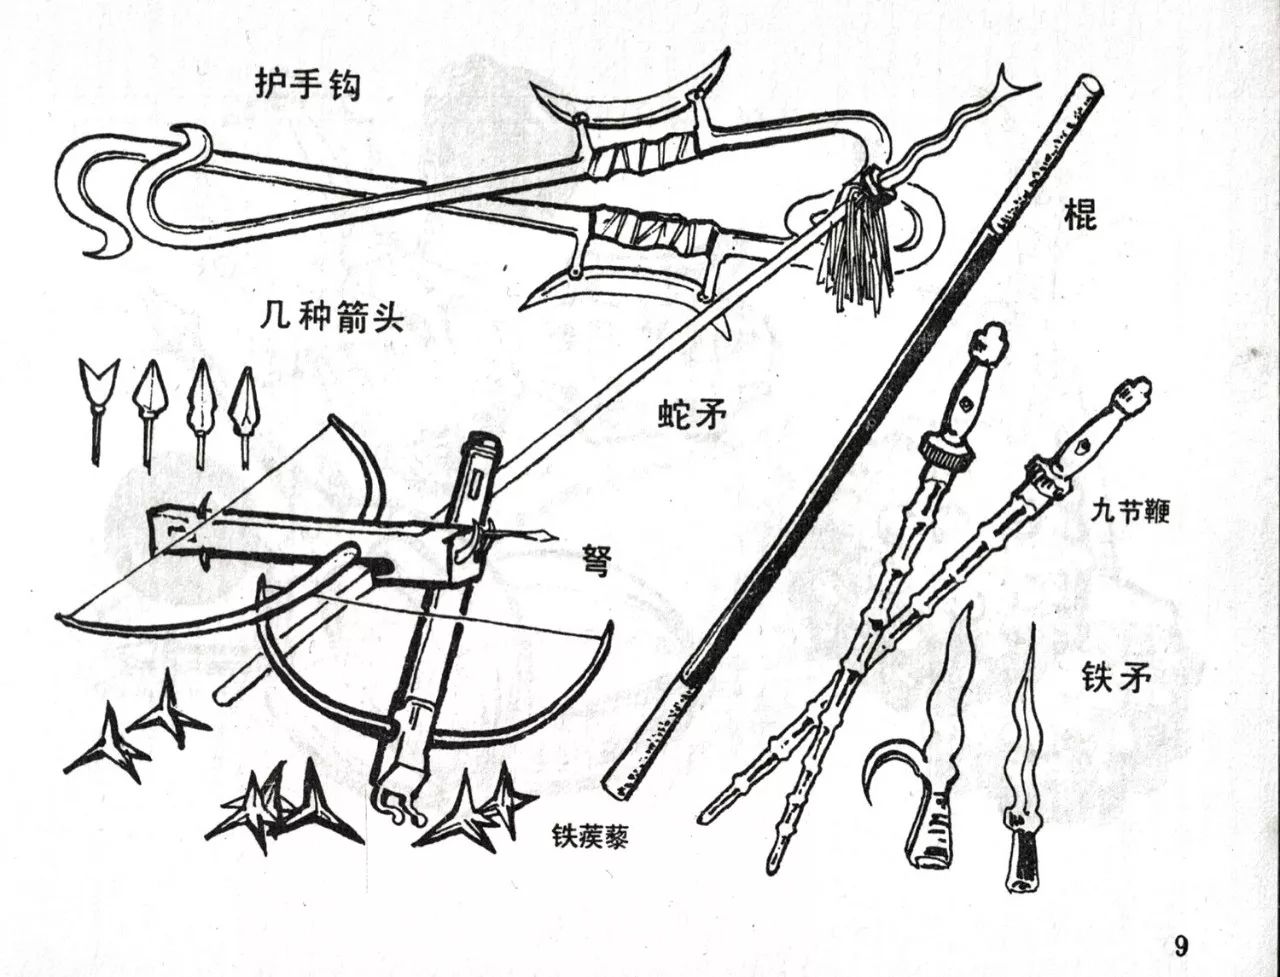 【中国古代青铜兵器 （一批）】拍卖品_图片_价格_鉴赏_青铜器_雅昌艺术品拍卖网